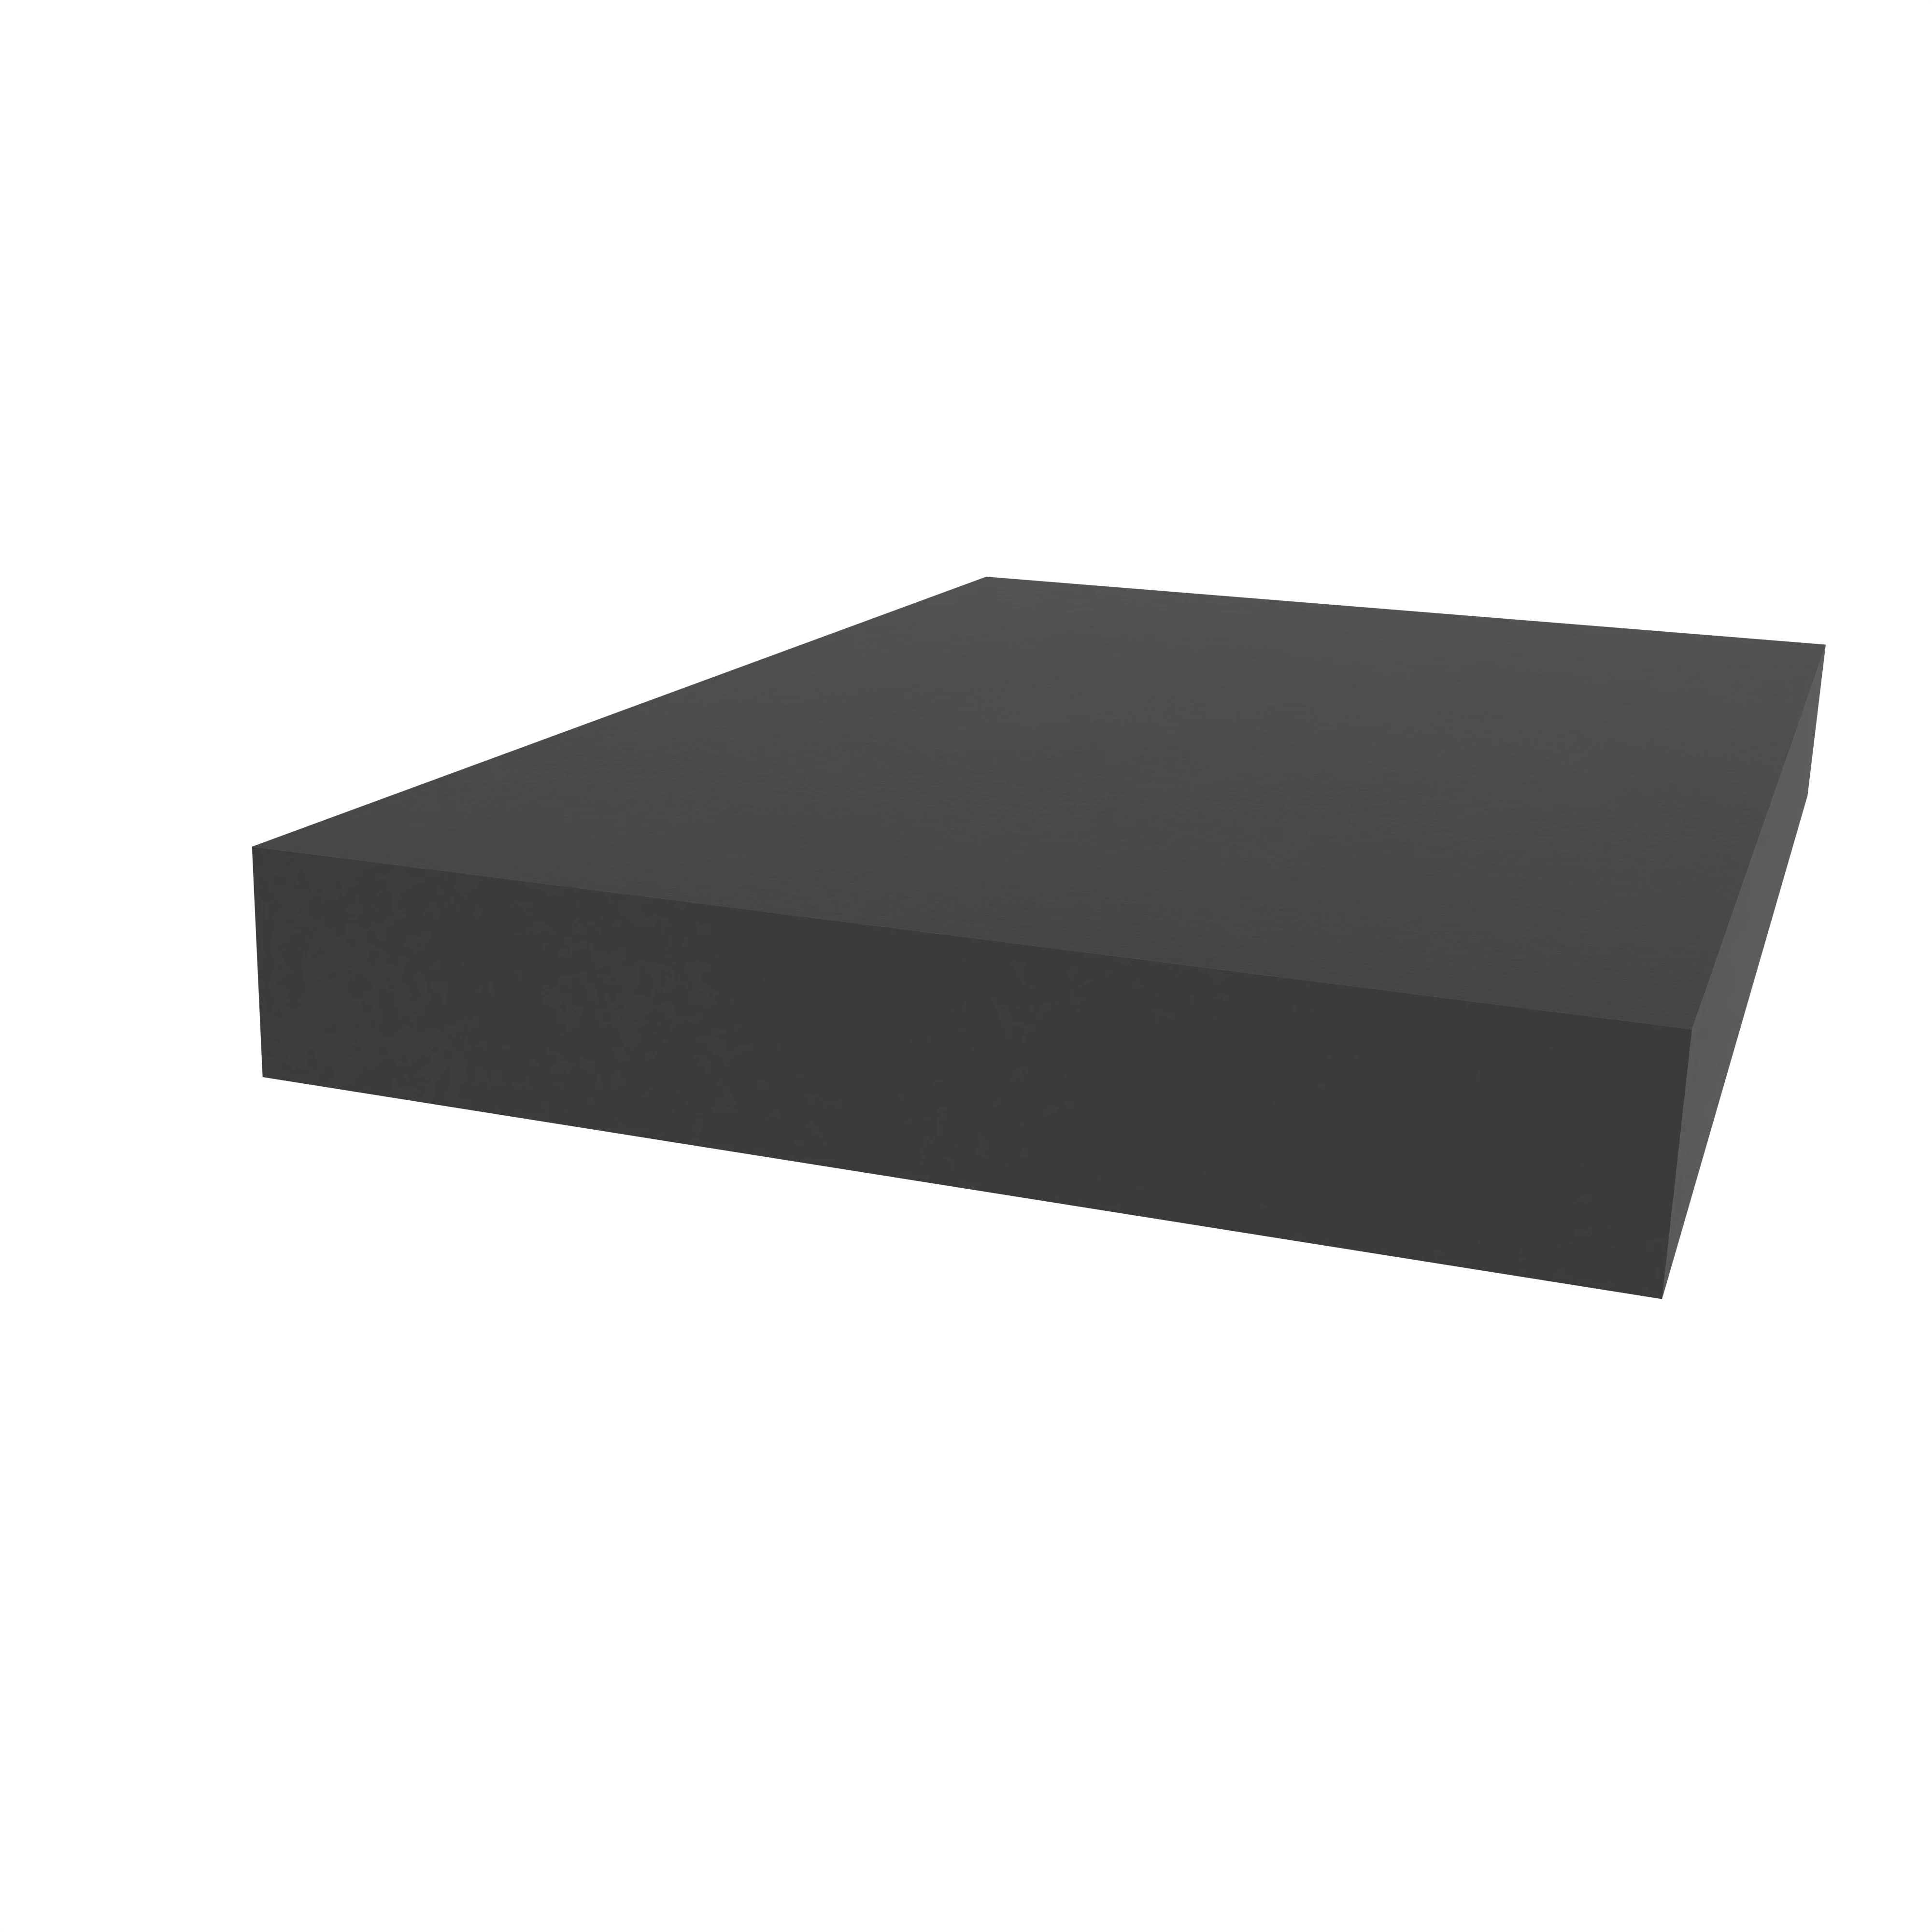 Moosgummidichtung vierkant | 30 mm Breite | Farbe: schwarz